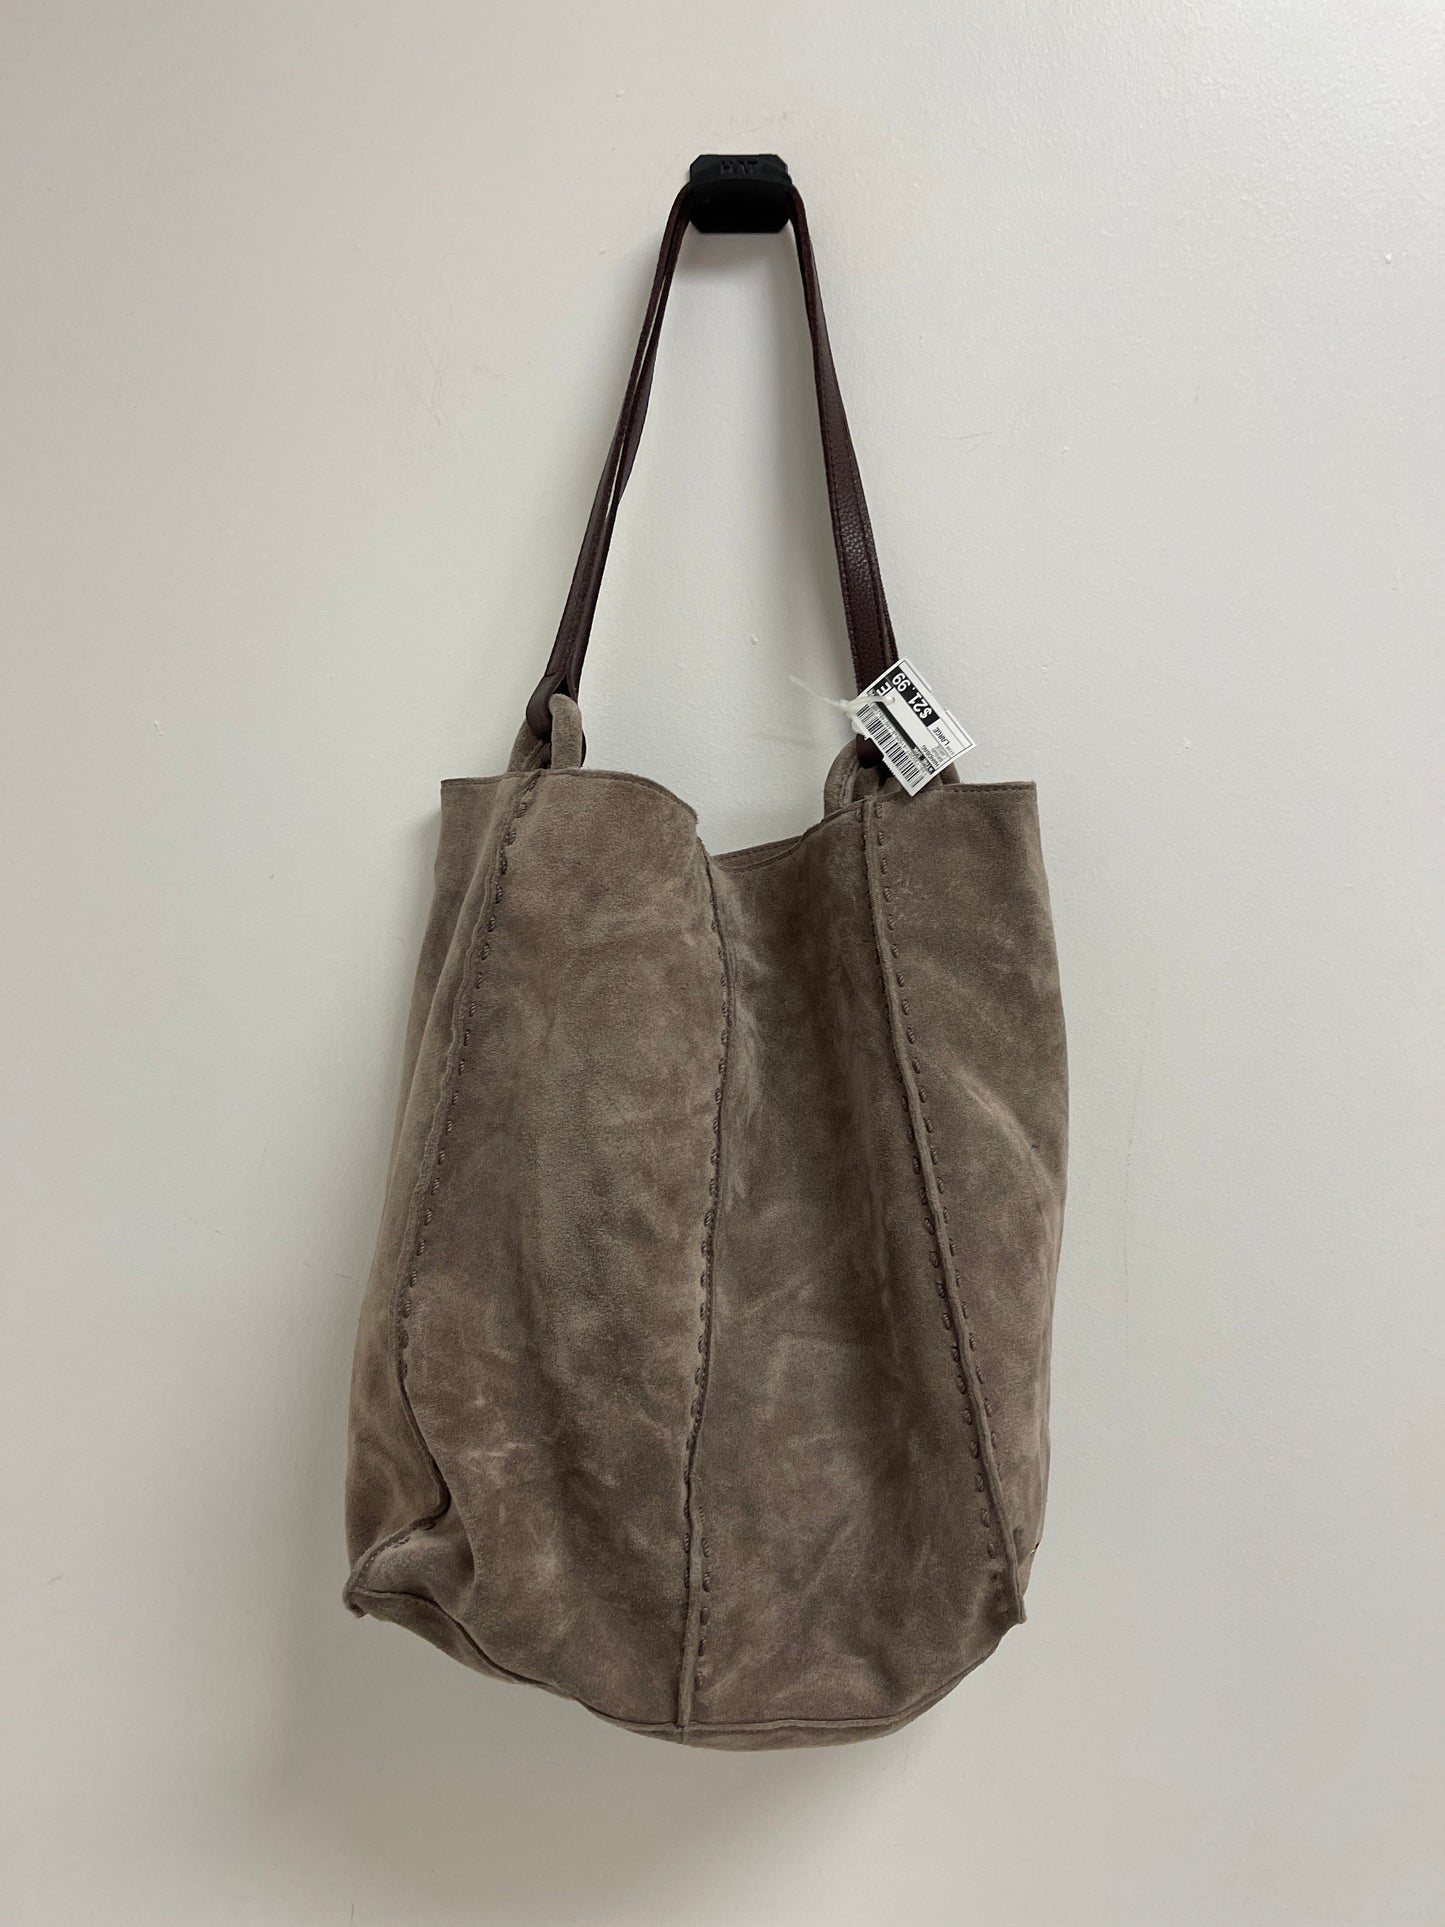 Brown Handbag The Sak, Size Large